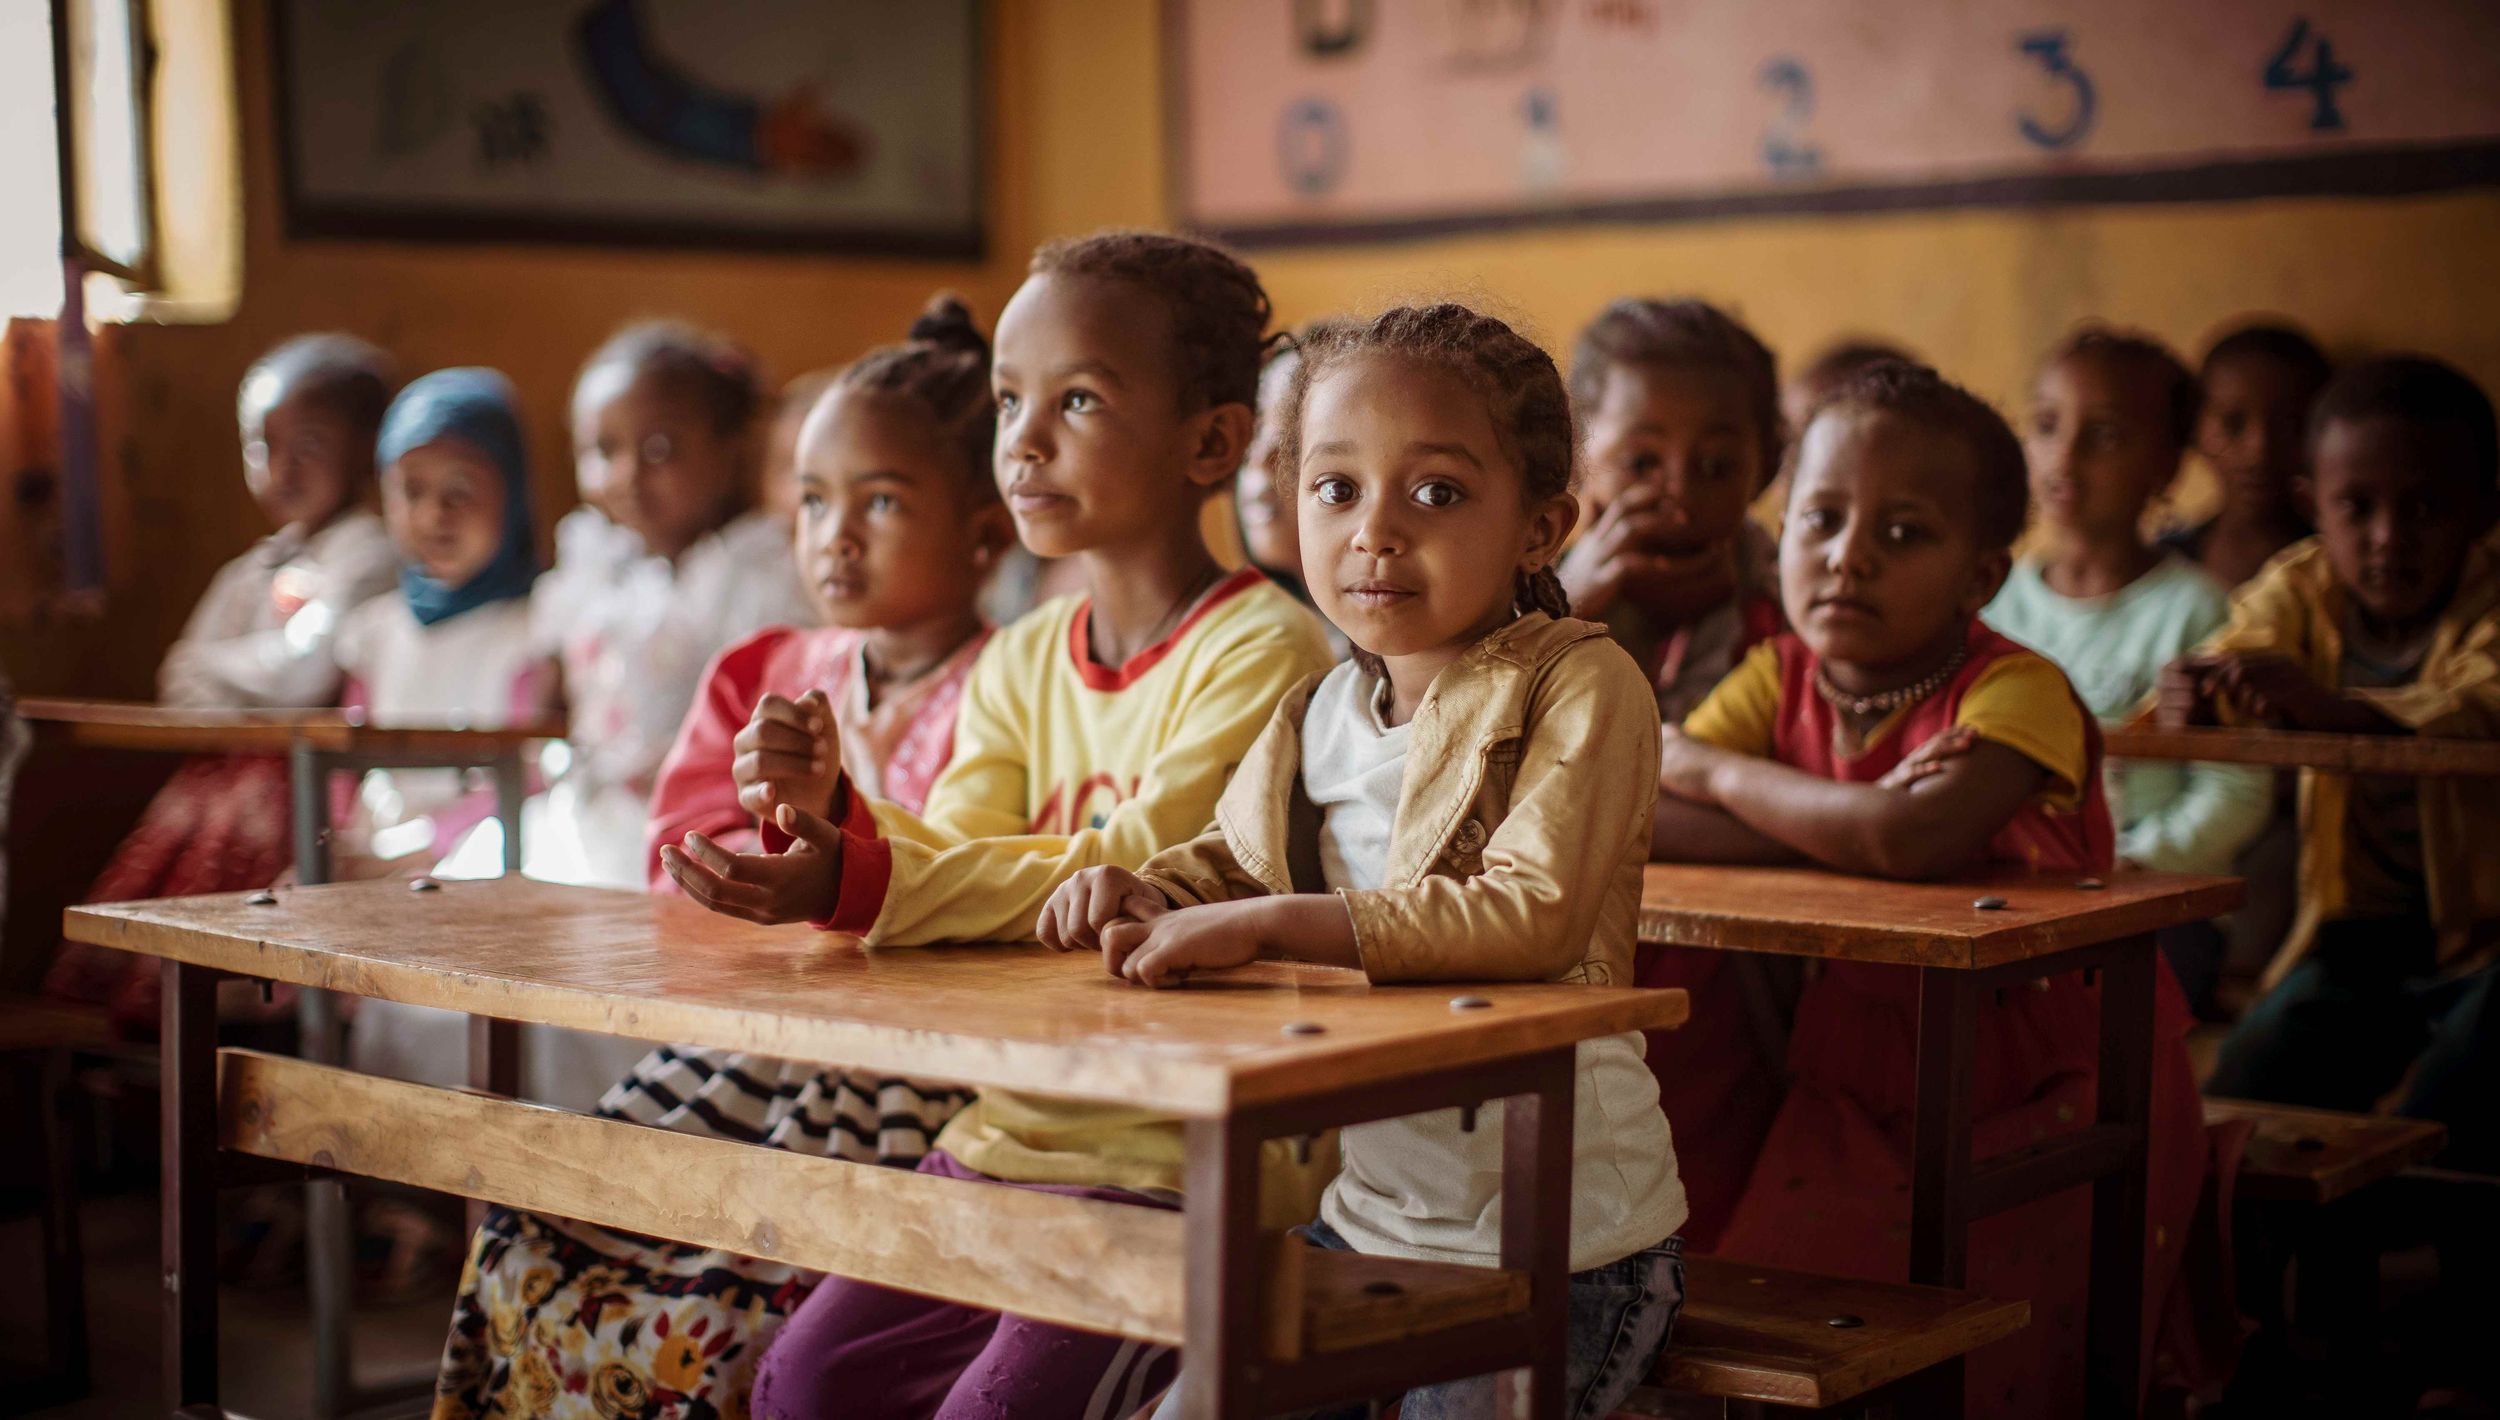 Schulkinder hinter Holzpulten, drei Mädchen im Vordergrund sind aufmerksam oder lächeln  (Bildquelle: Jakob Studnar)